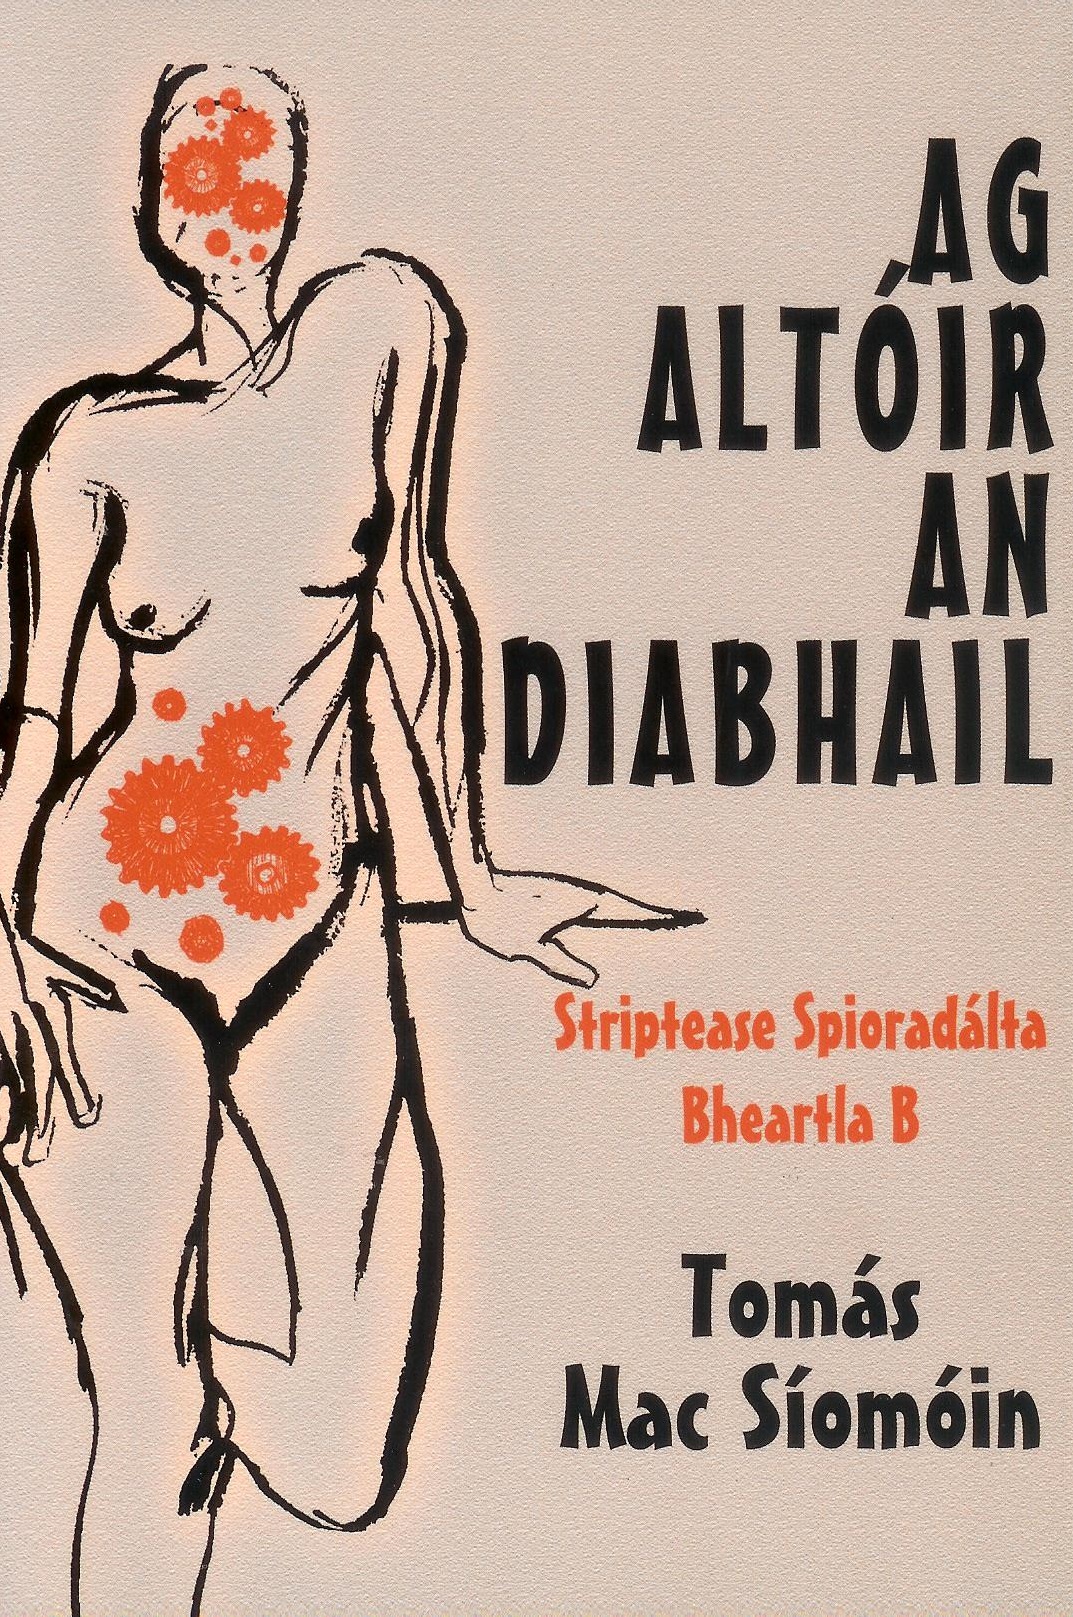 Leabhair|Books Ag Altóir an Diabhail